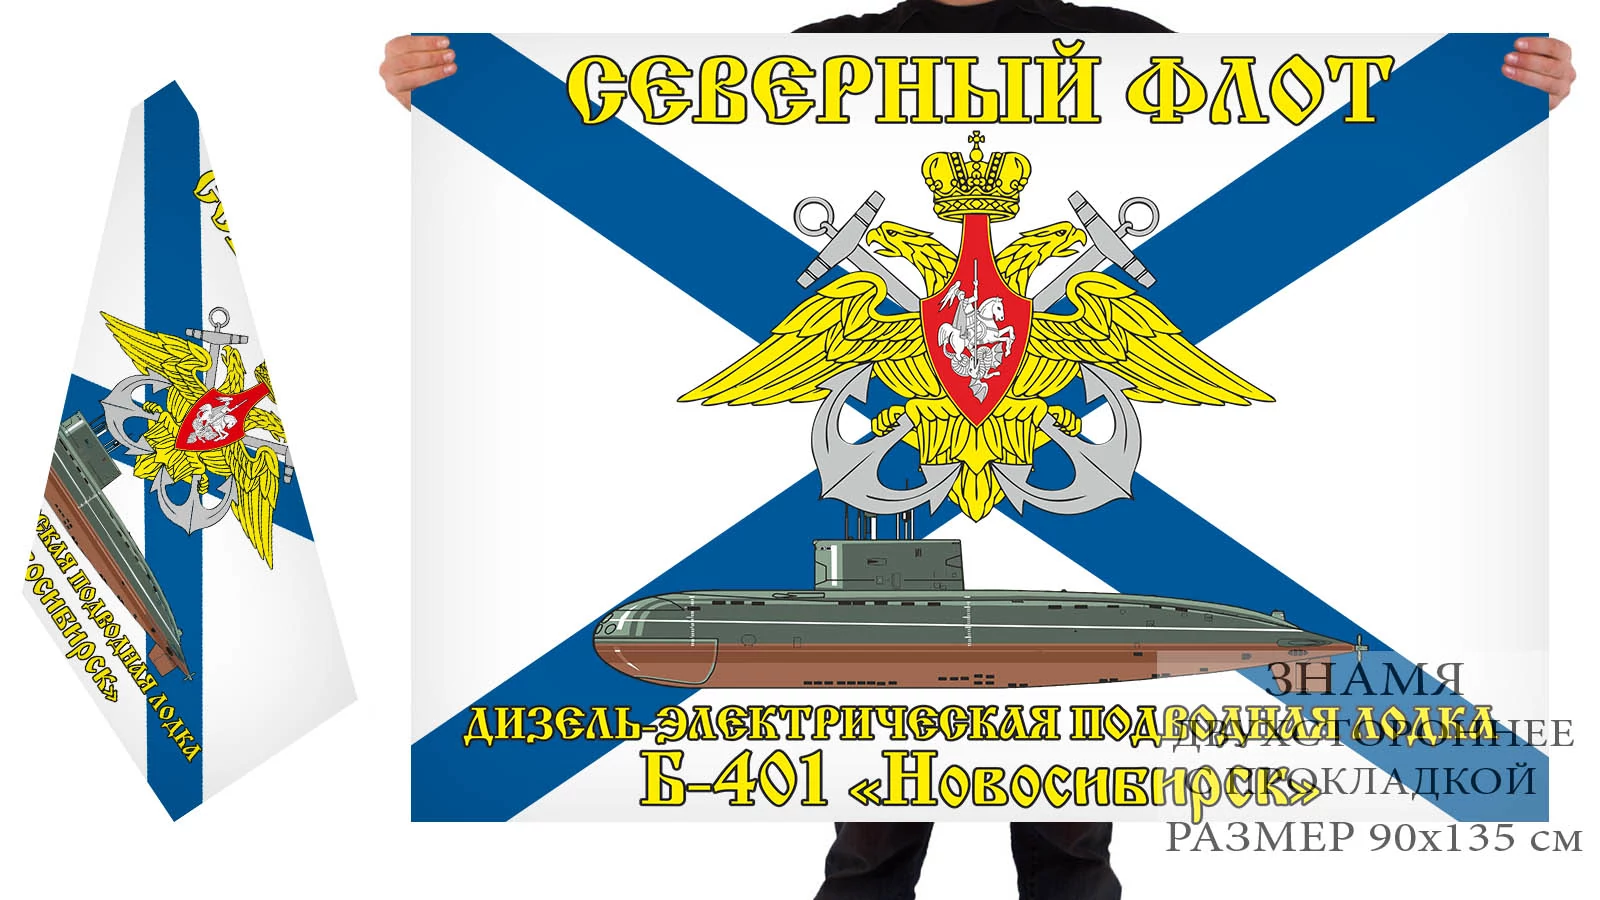 Двусторонний флаг ДЭПЛ Б-401 "Новосибирск"